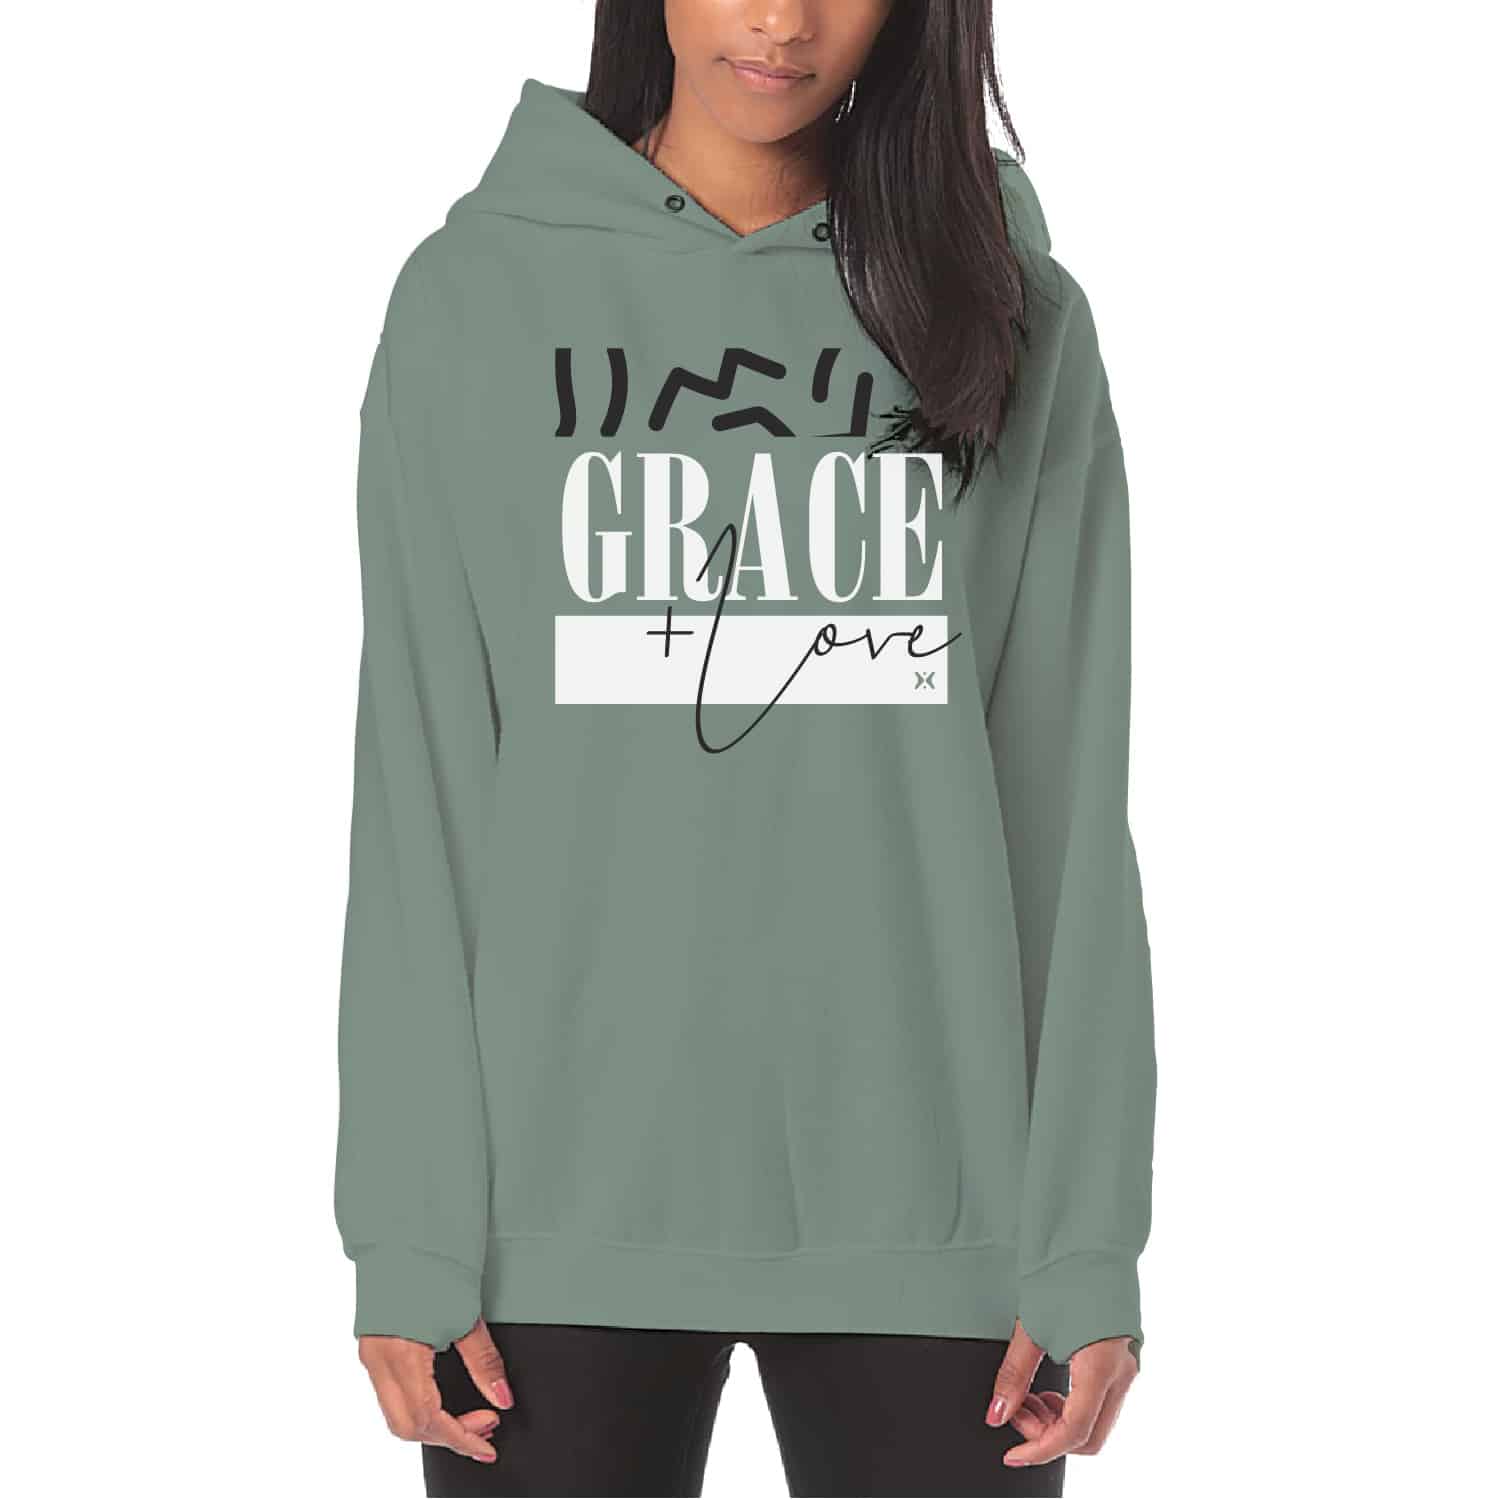 Saved by Grace Women's Sweatshirt